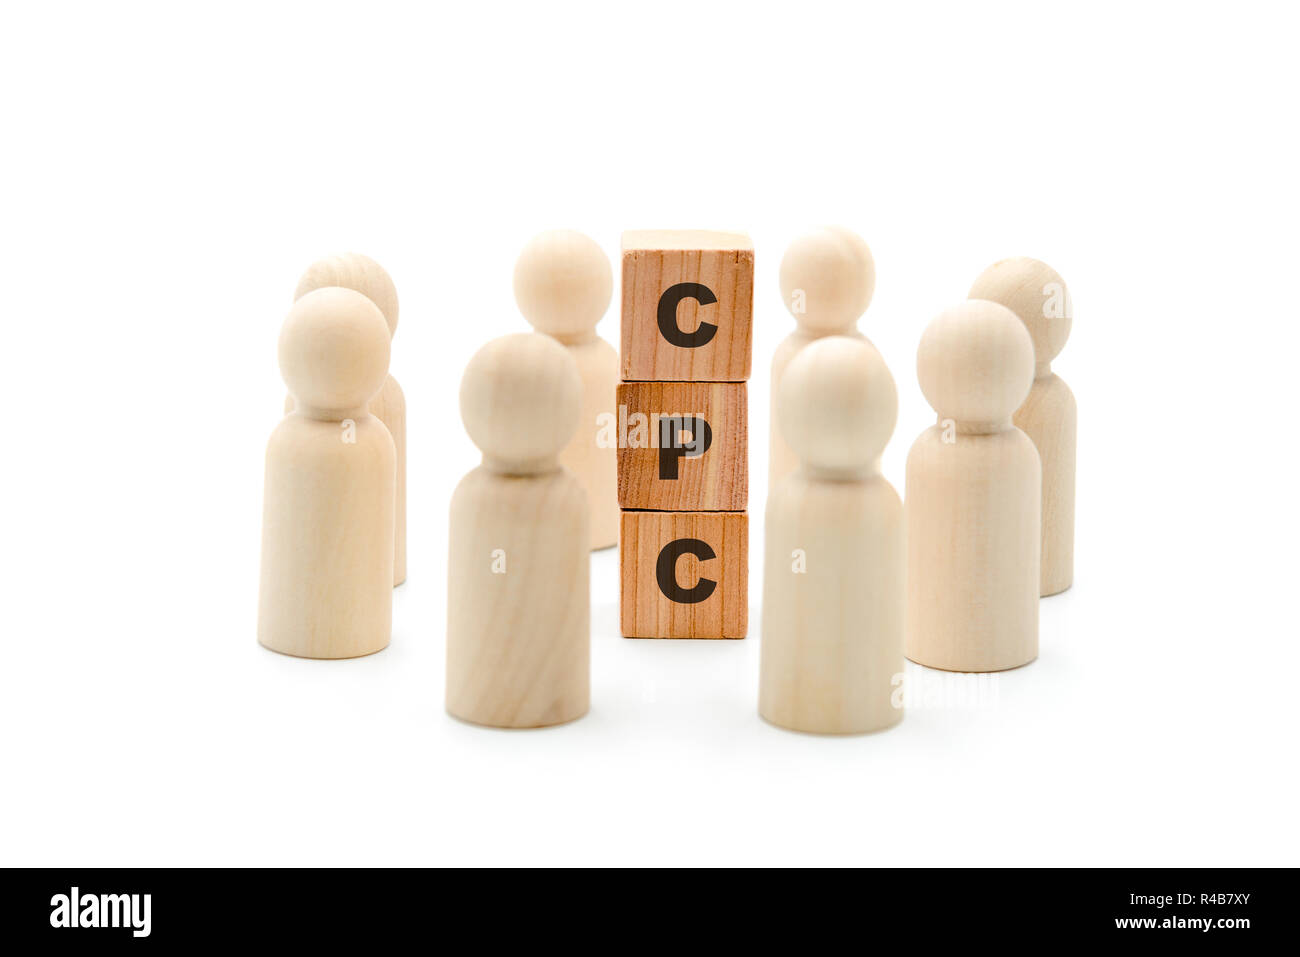 Figures en bois comme travail d'équipe en cercle autour de l'acronyme CPC Coût par clic, isolé sur fond blanc, concept minimaliste Banque D'Images